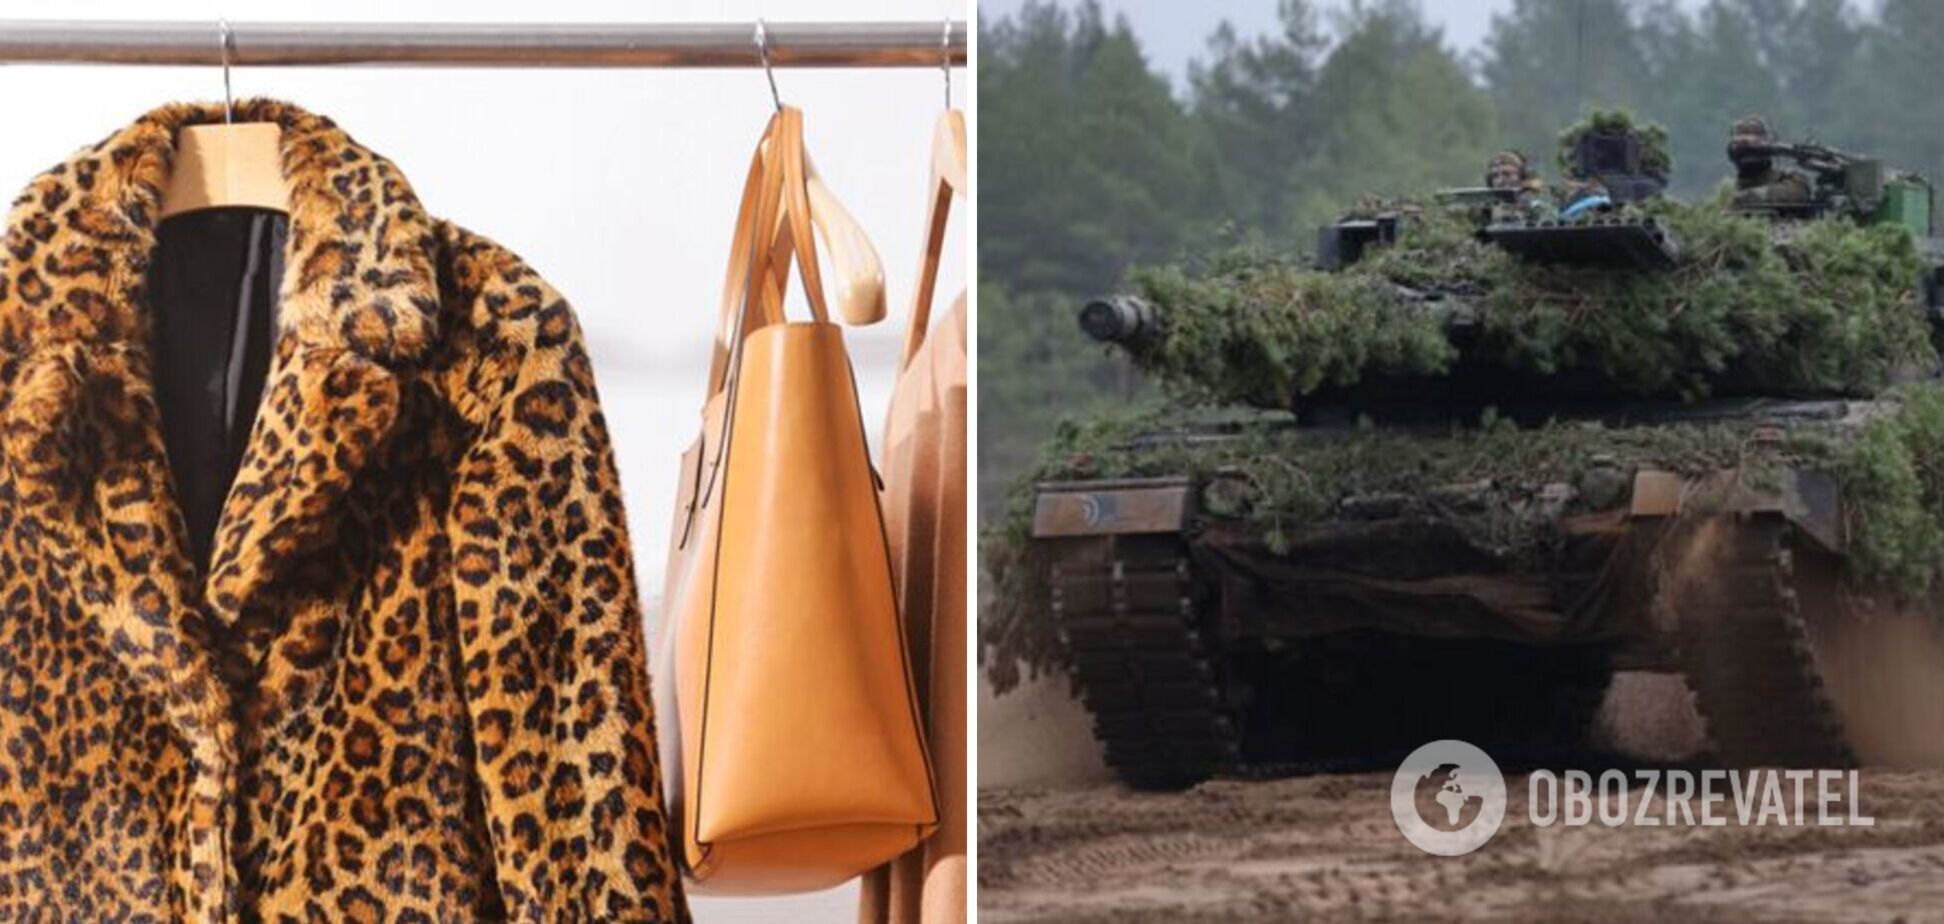 Ховаємо леопард в шафу: Осадча та Решетнік запропонували ідею наступного флешмобу з метою предачі зброї Україні